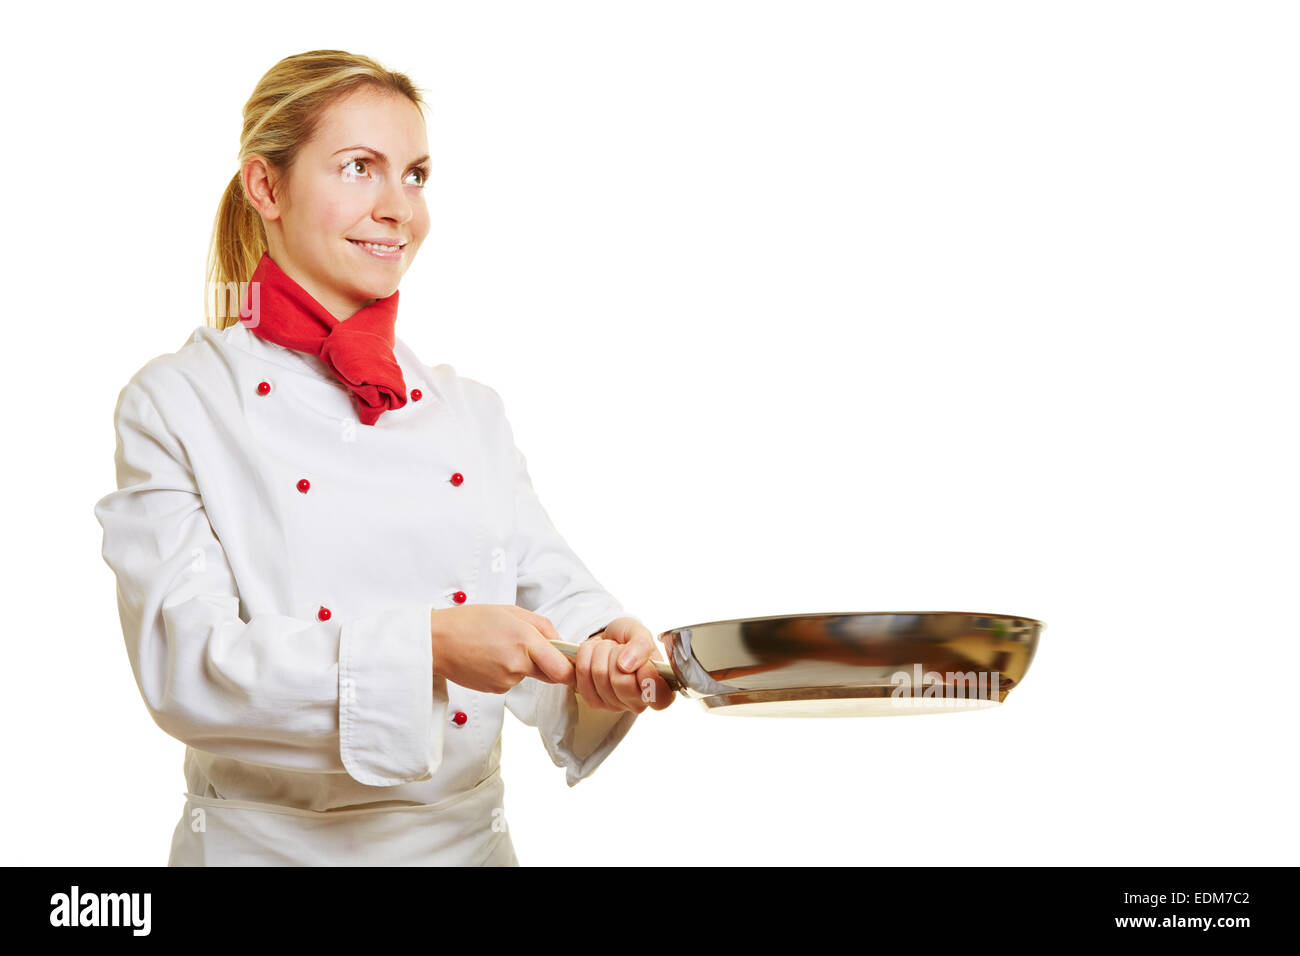 Femme souriante comme chef de cuisine cuisinier avec une poêle Banque D'Images